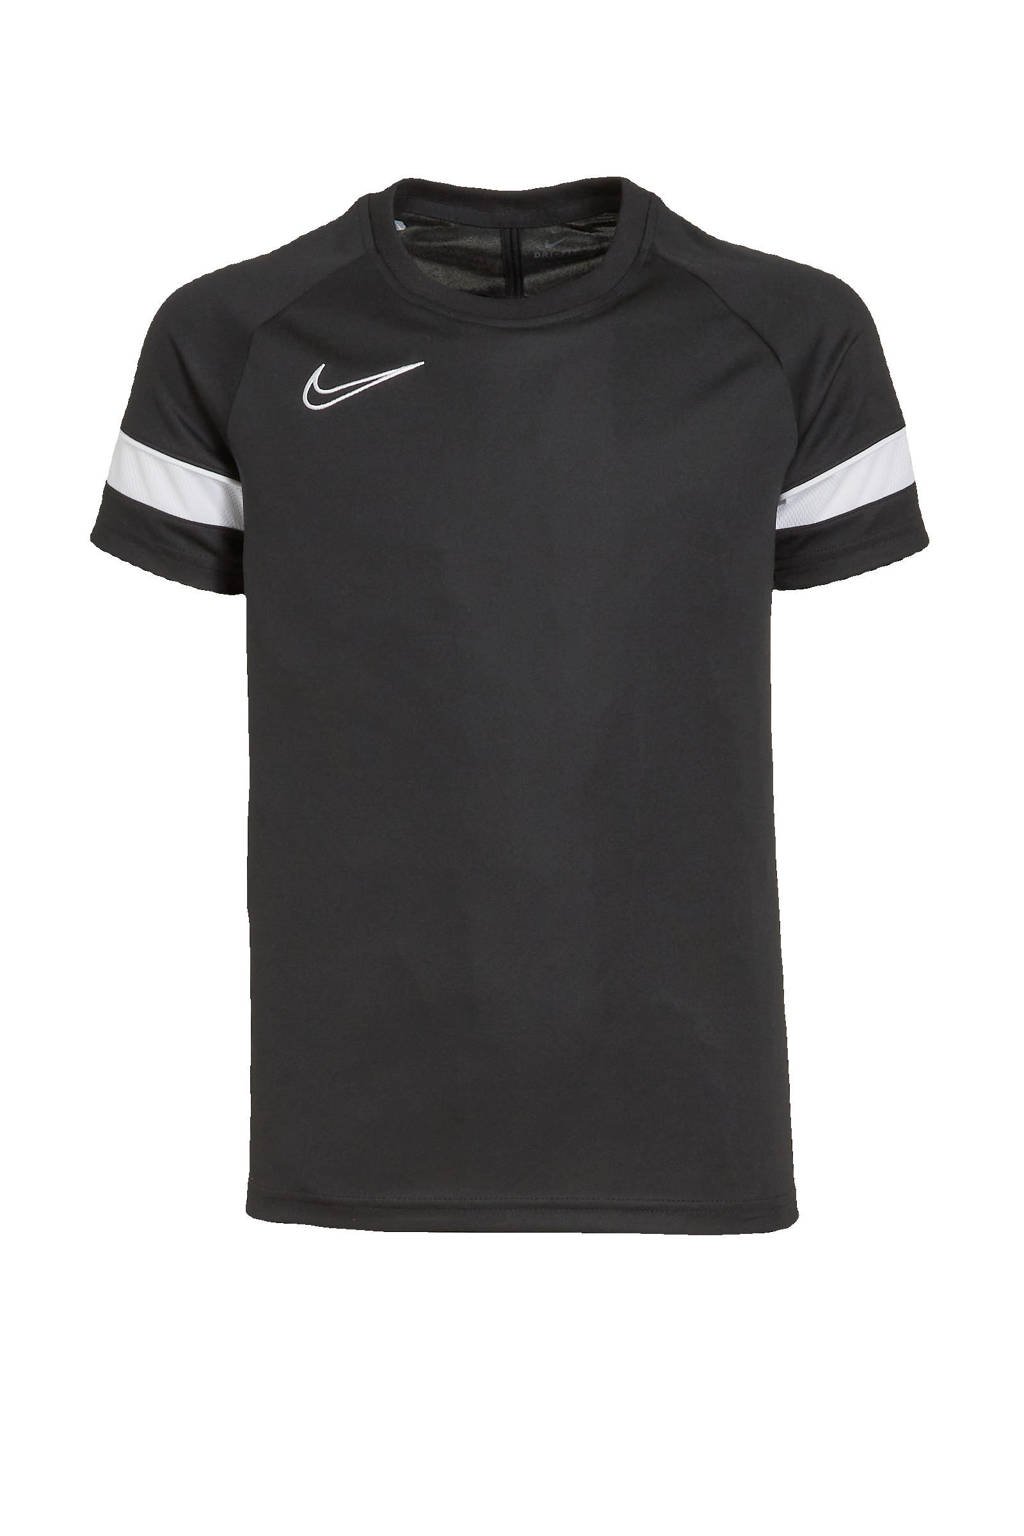 Zwart en witte jongens en meisjes Nike Junior voetbalshirt van polyester met logo dessin, korte mouwen en ronde hals